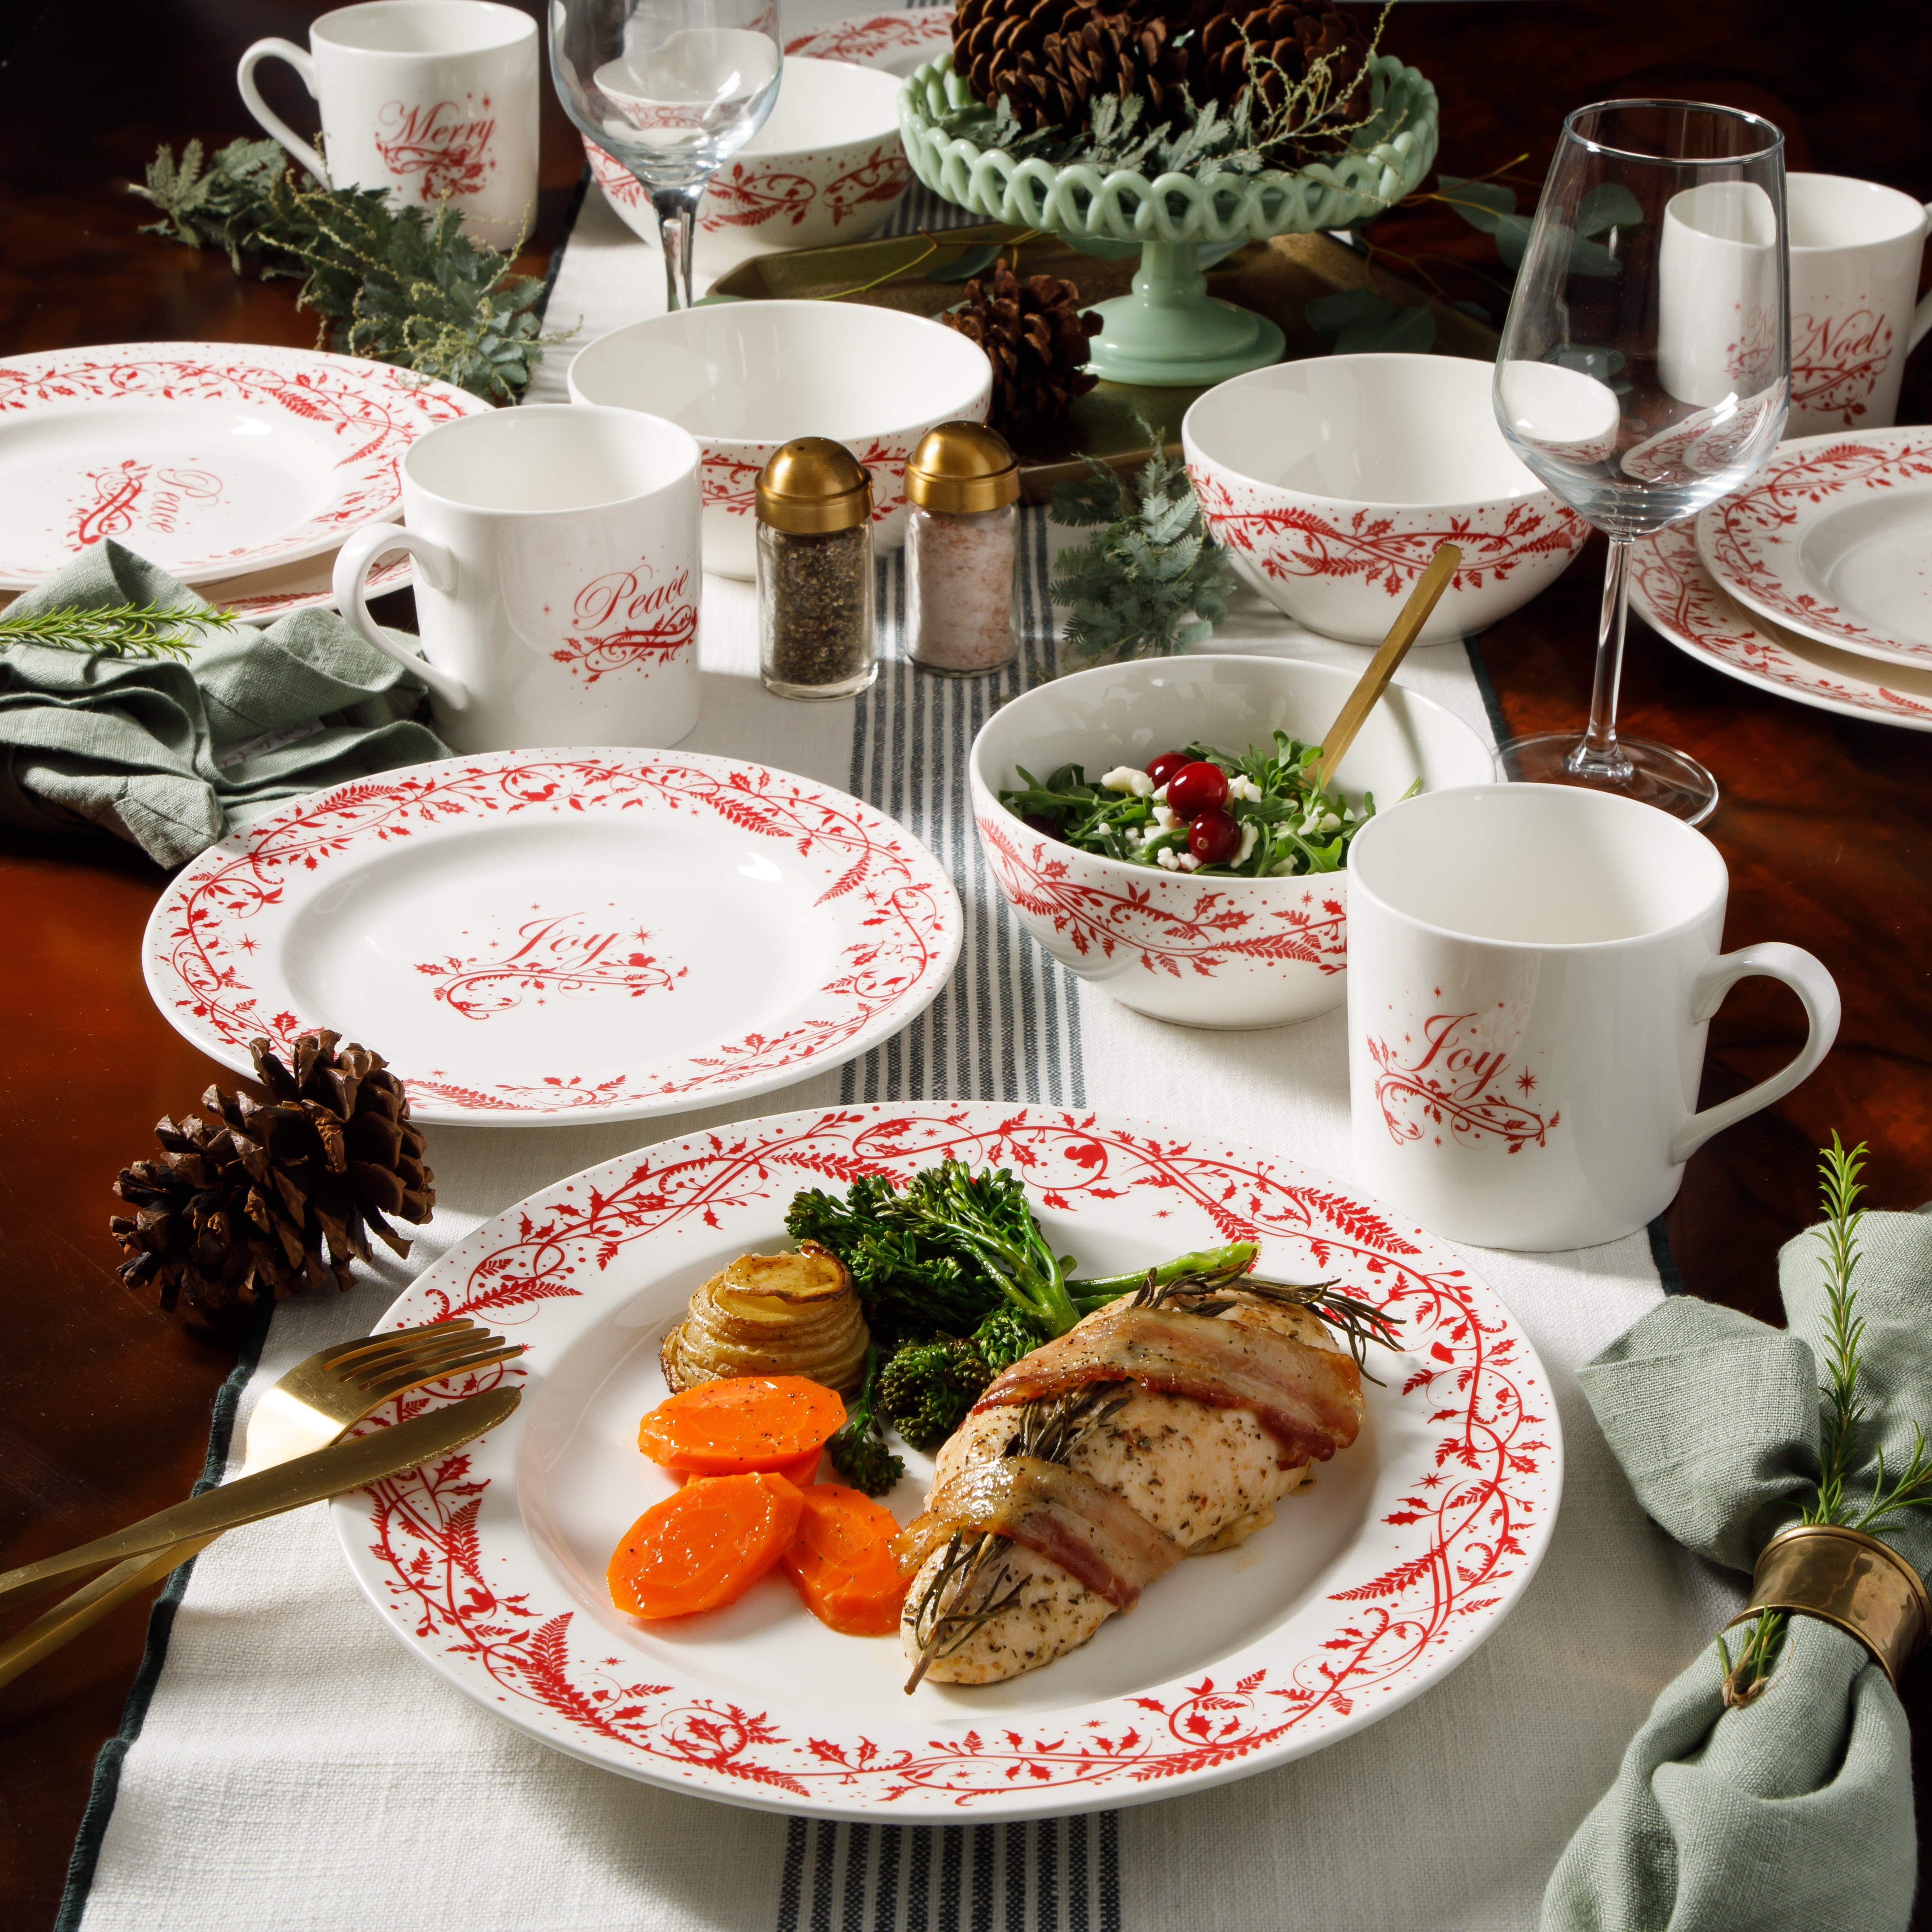 Martha Stewart Holiday Vines 16-Piece Porcelain Dinnerware Set